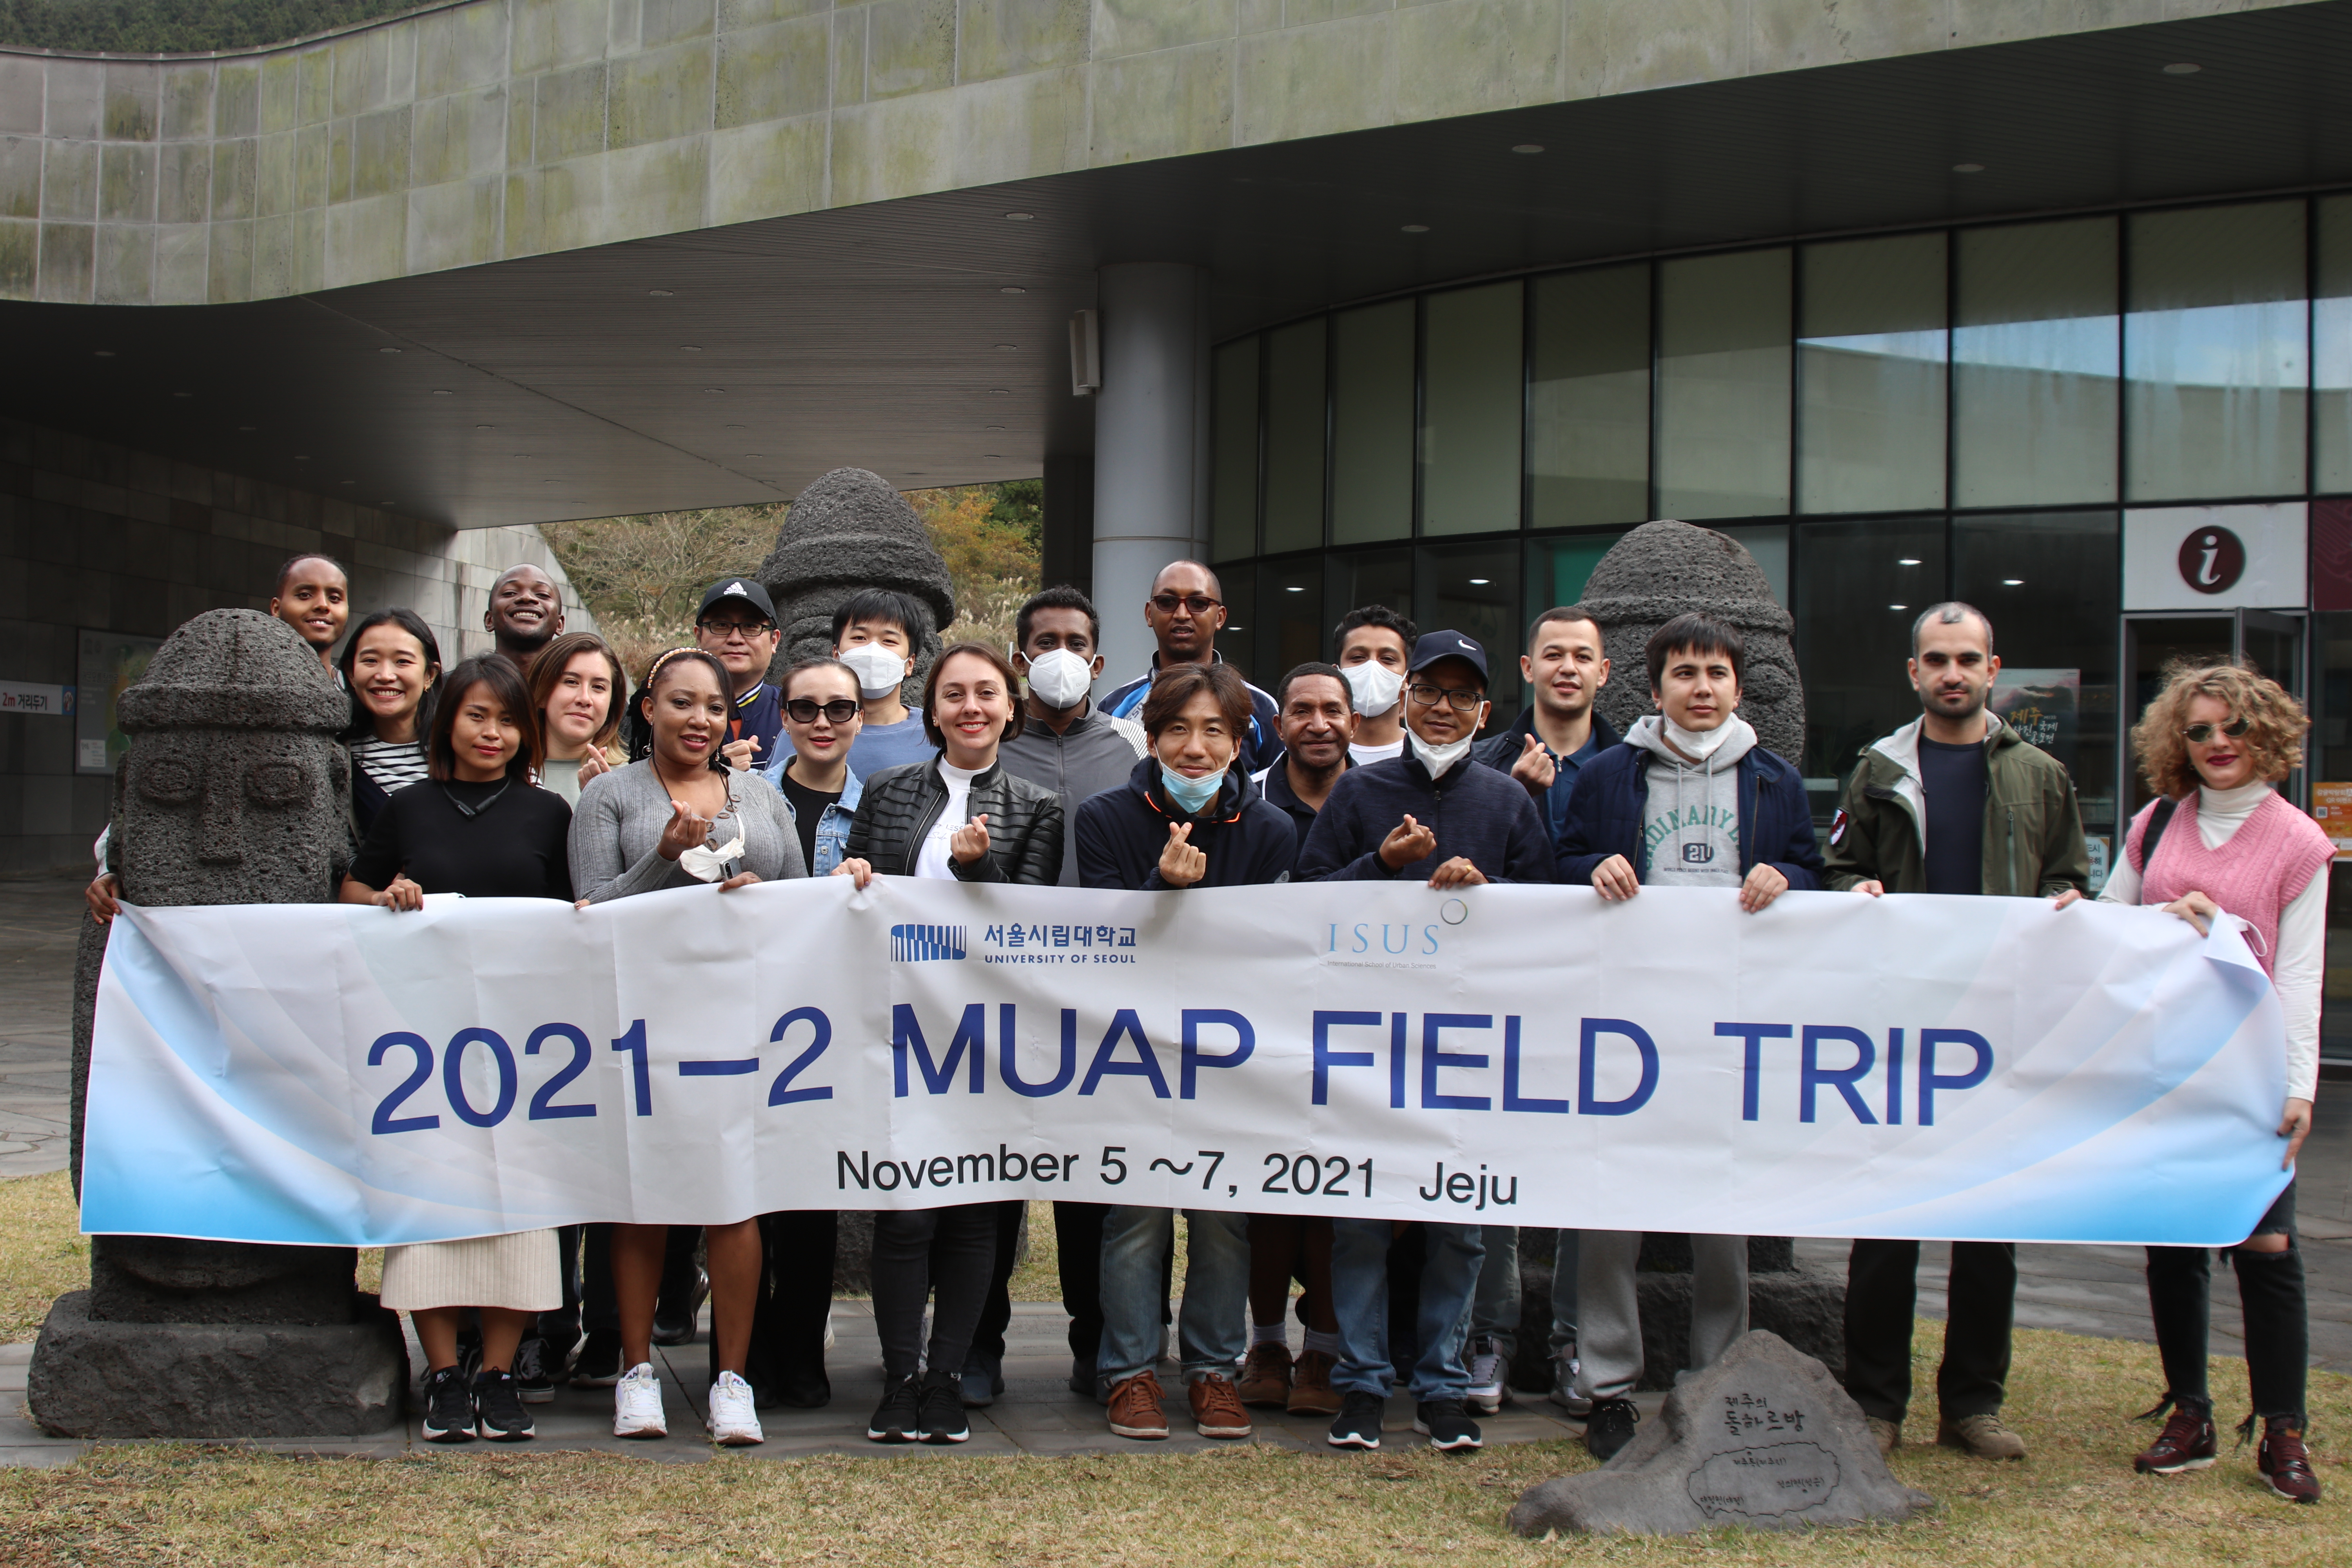 [MUAP] 2021-2nd Field Trip to Jeju